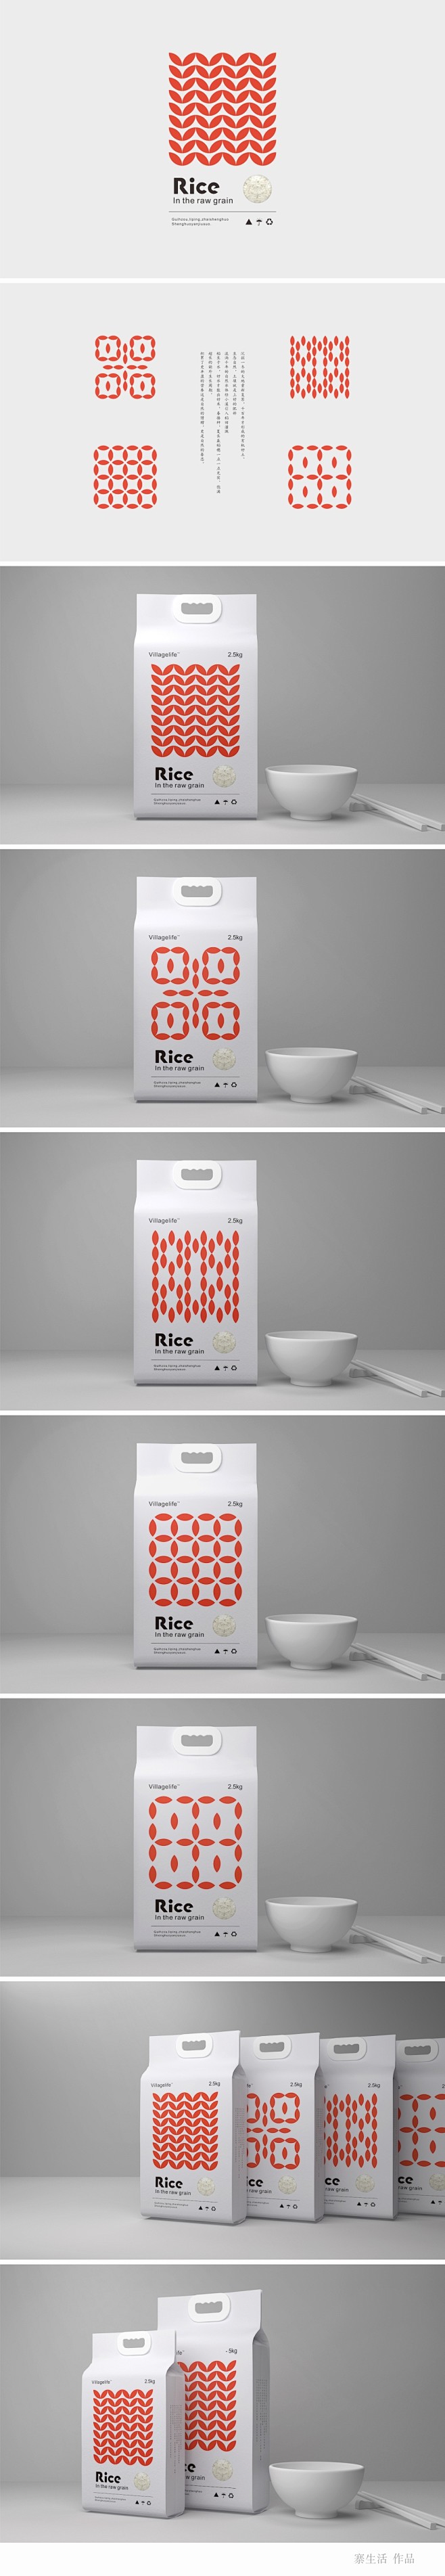 Rice-大米包装设计